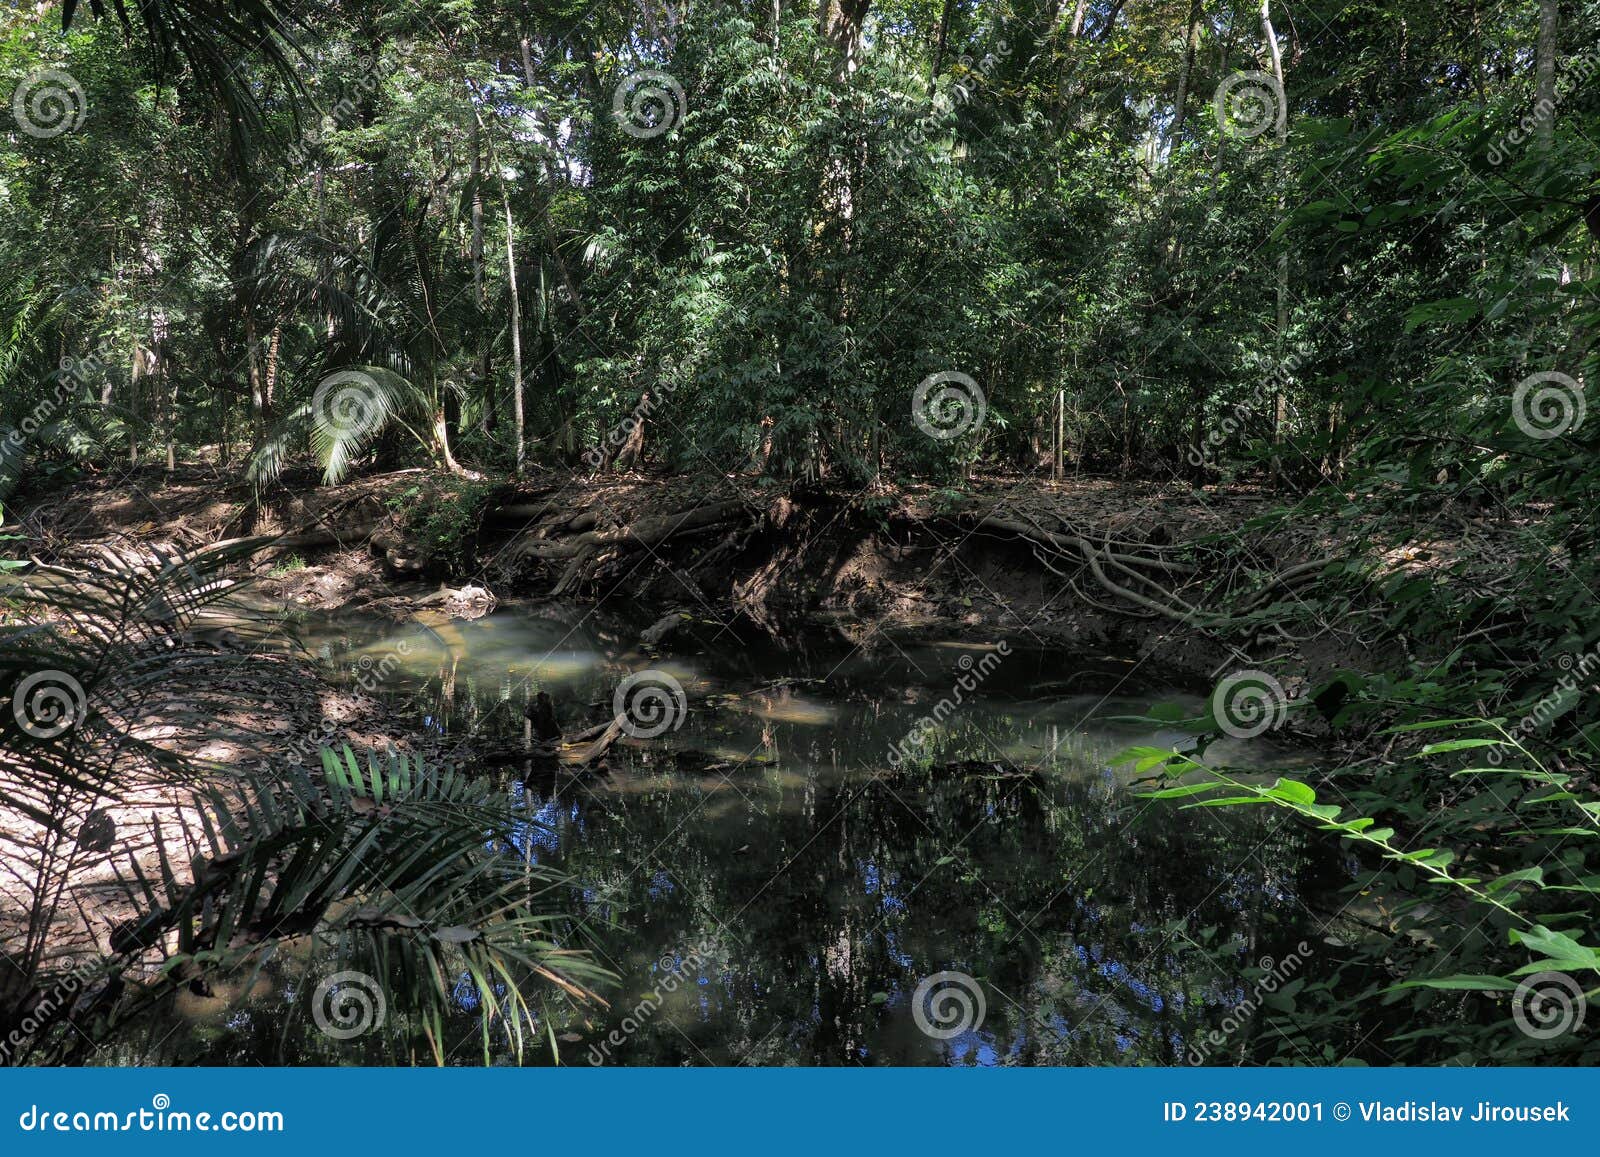 dense mangrove forest refugio nacional de vida silvestre curÃÂº. costa rica